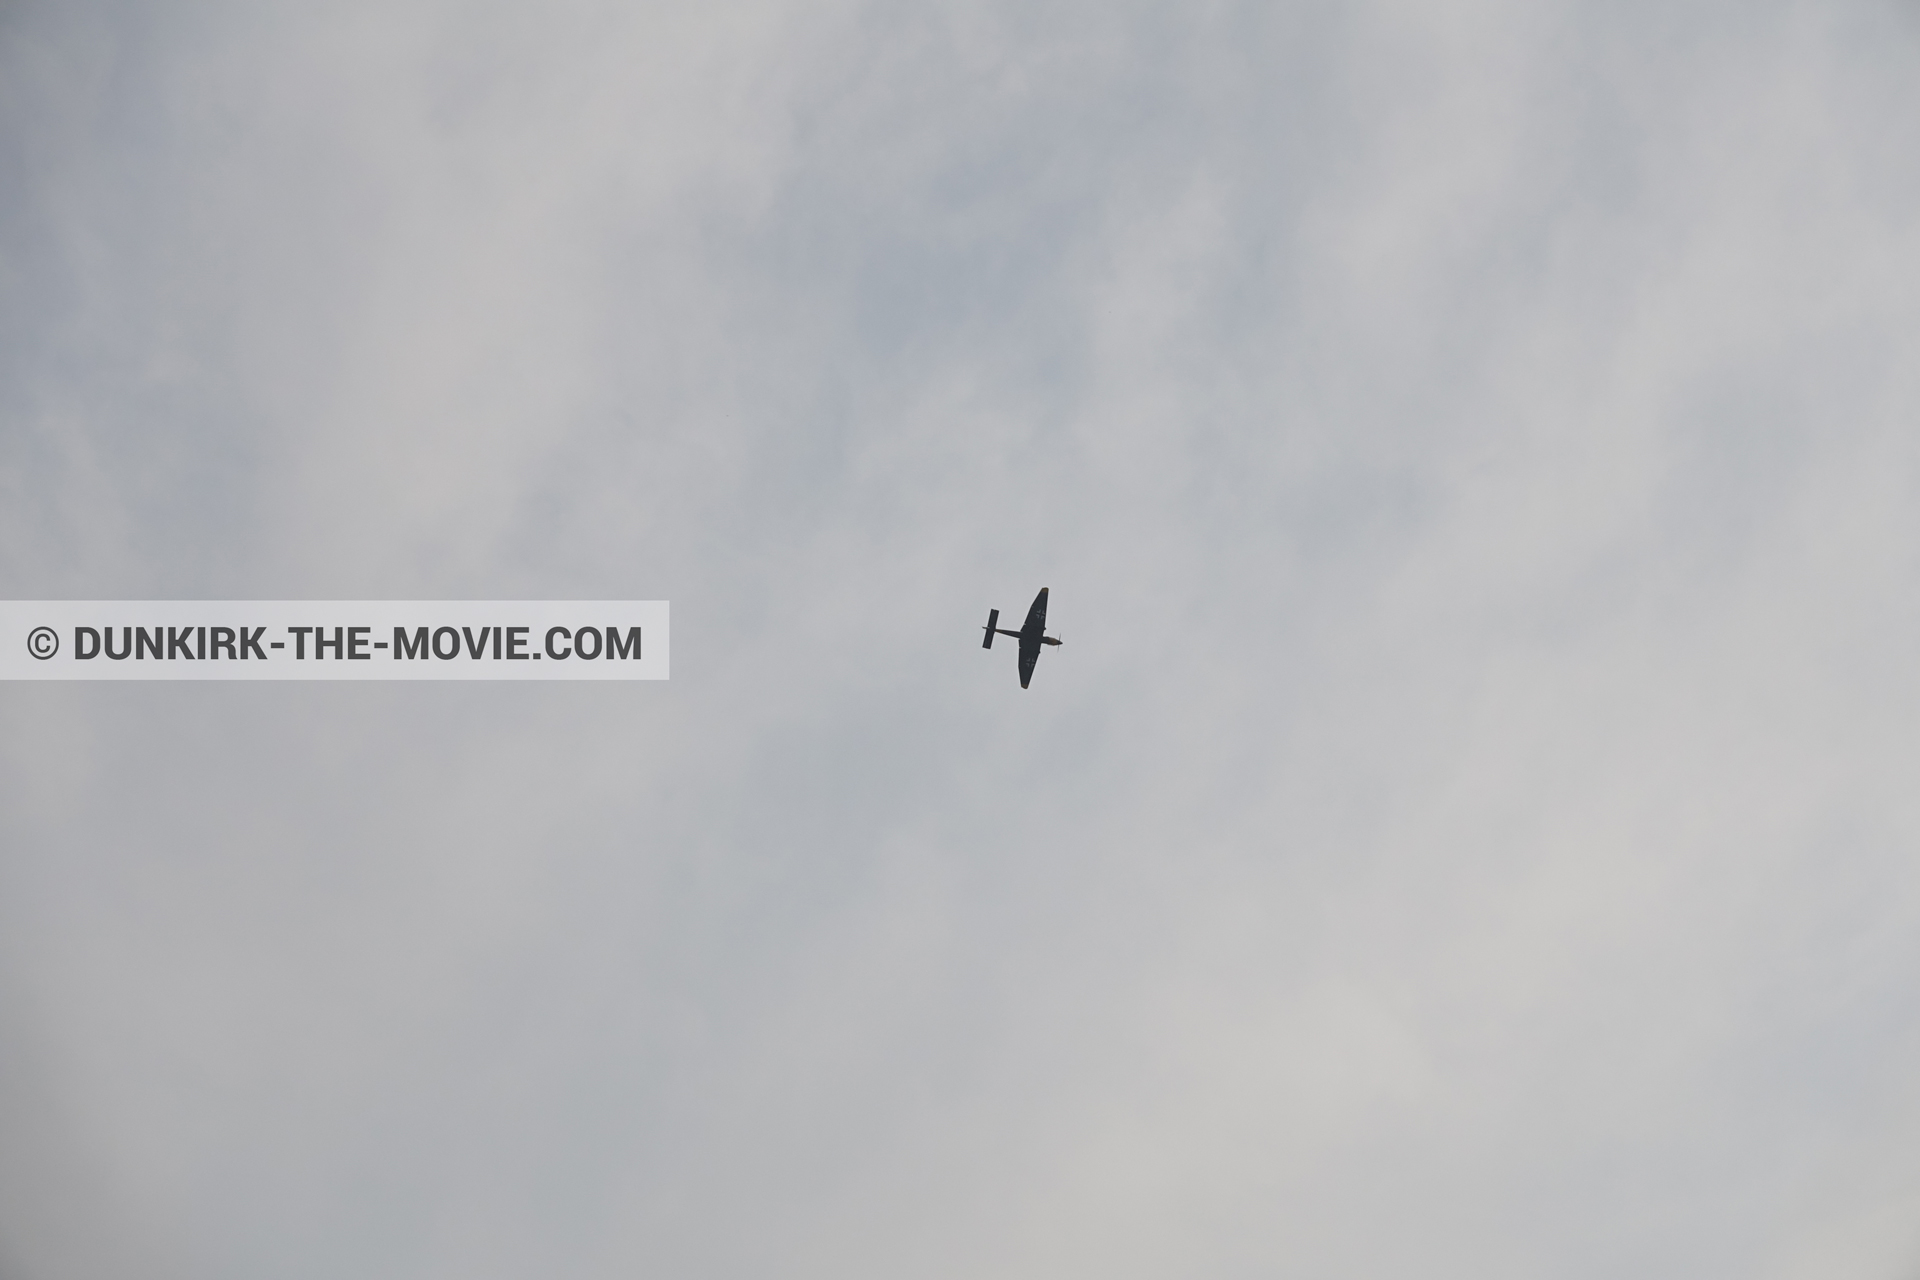 Fotos con avion, cielo nublado,  durante el rodaje de la película Dunkerque de Nolan